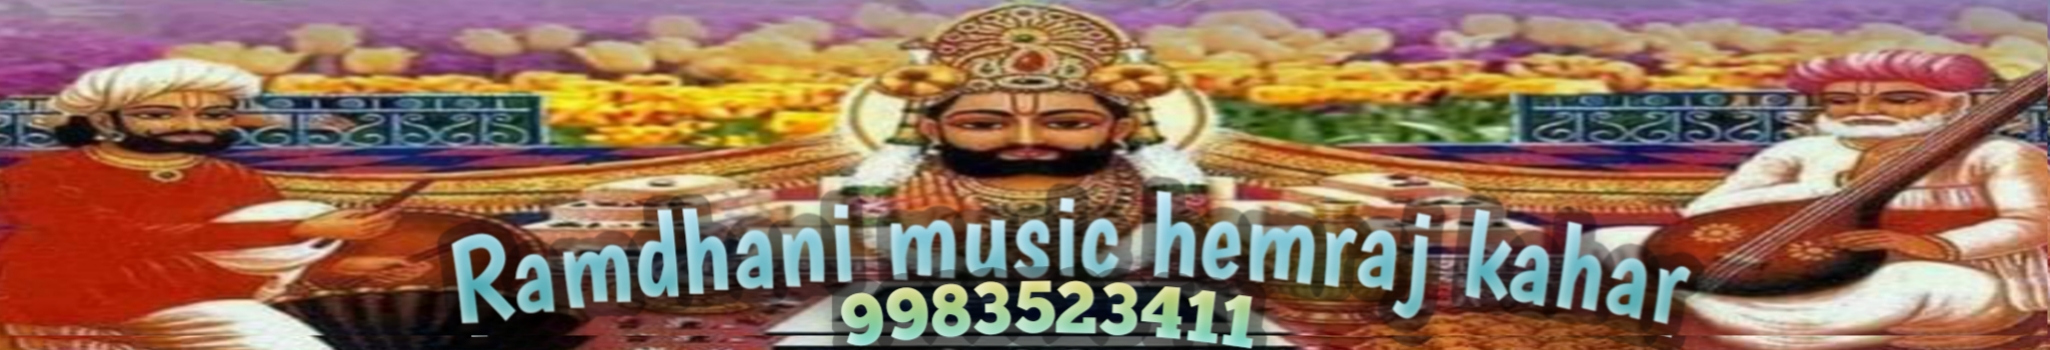 Ramdhani music hemraj kahar